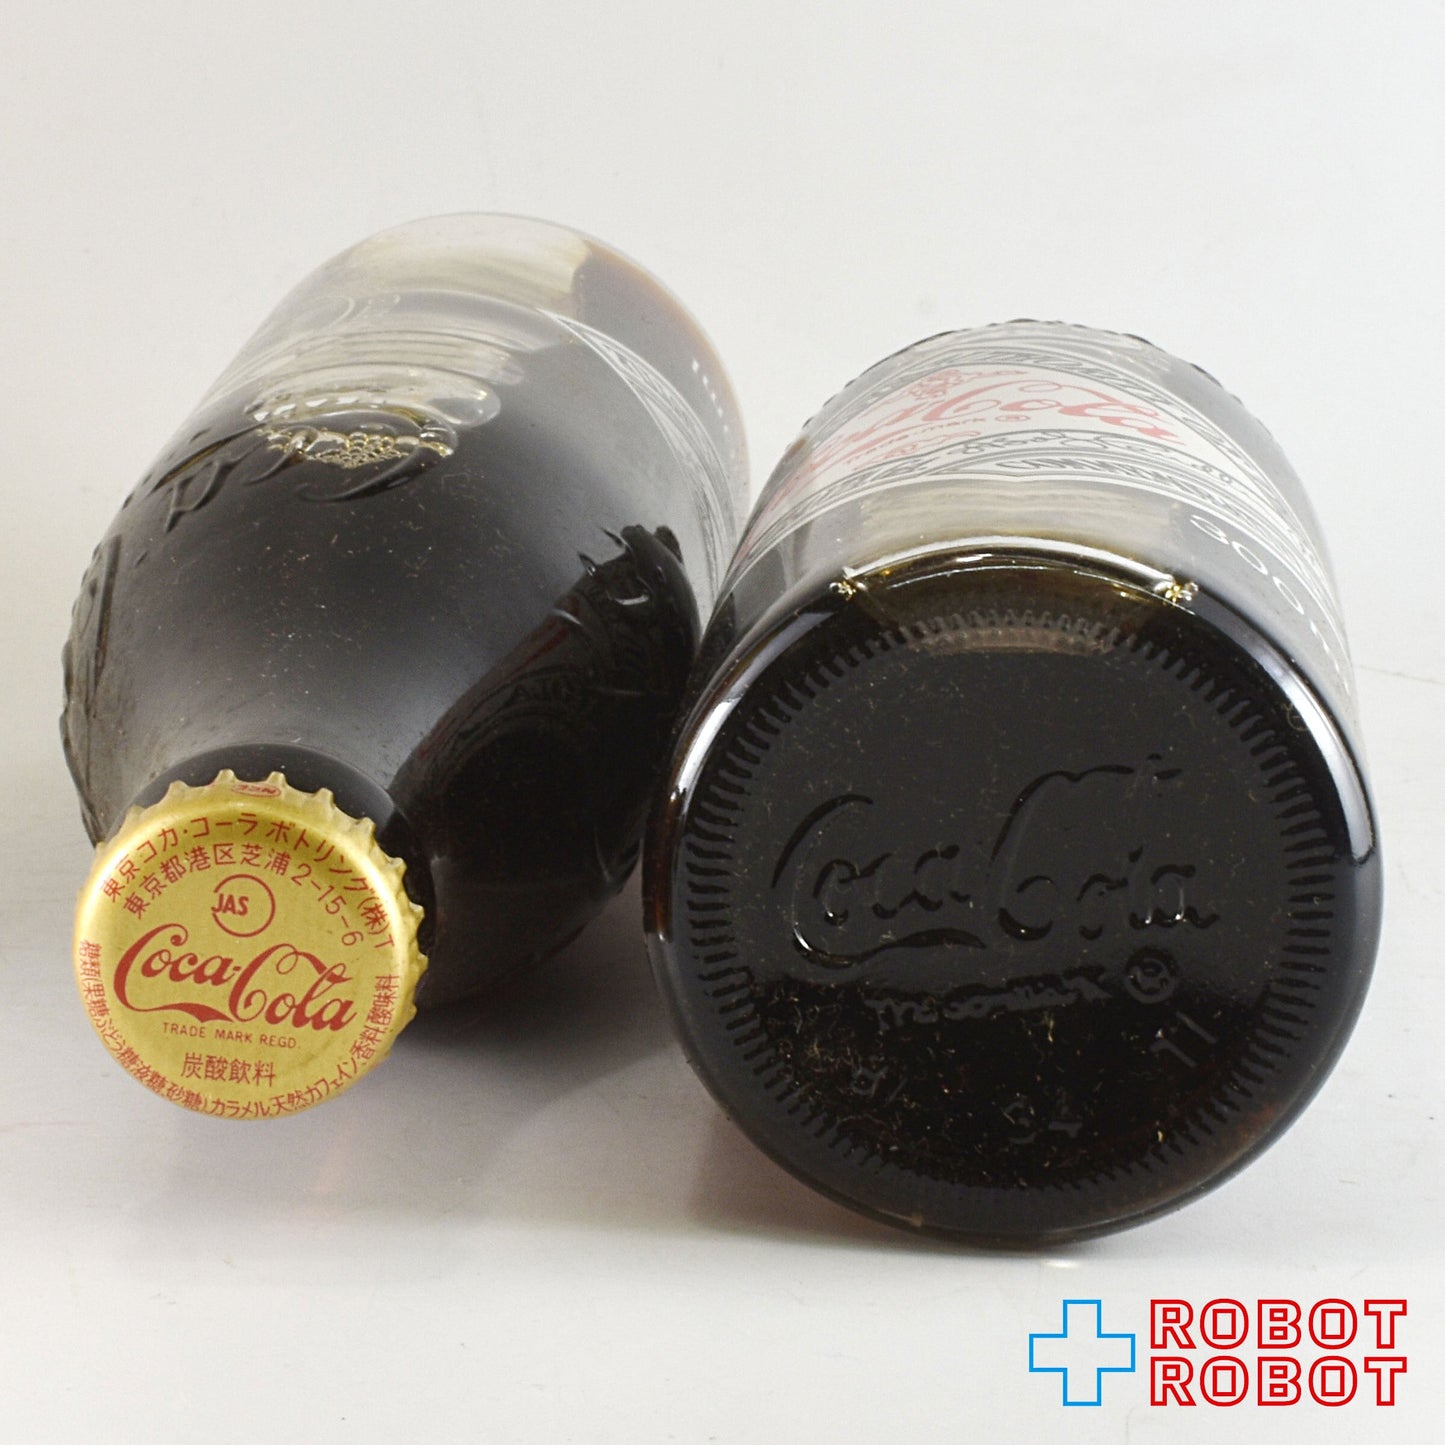 コカ・コーラ 25周年記念デザイン 1956-1981 瓶ボトル 2本 箱付